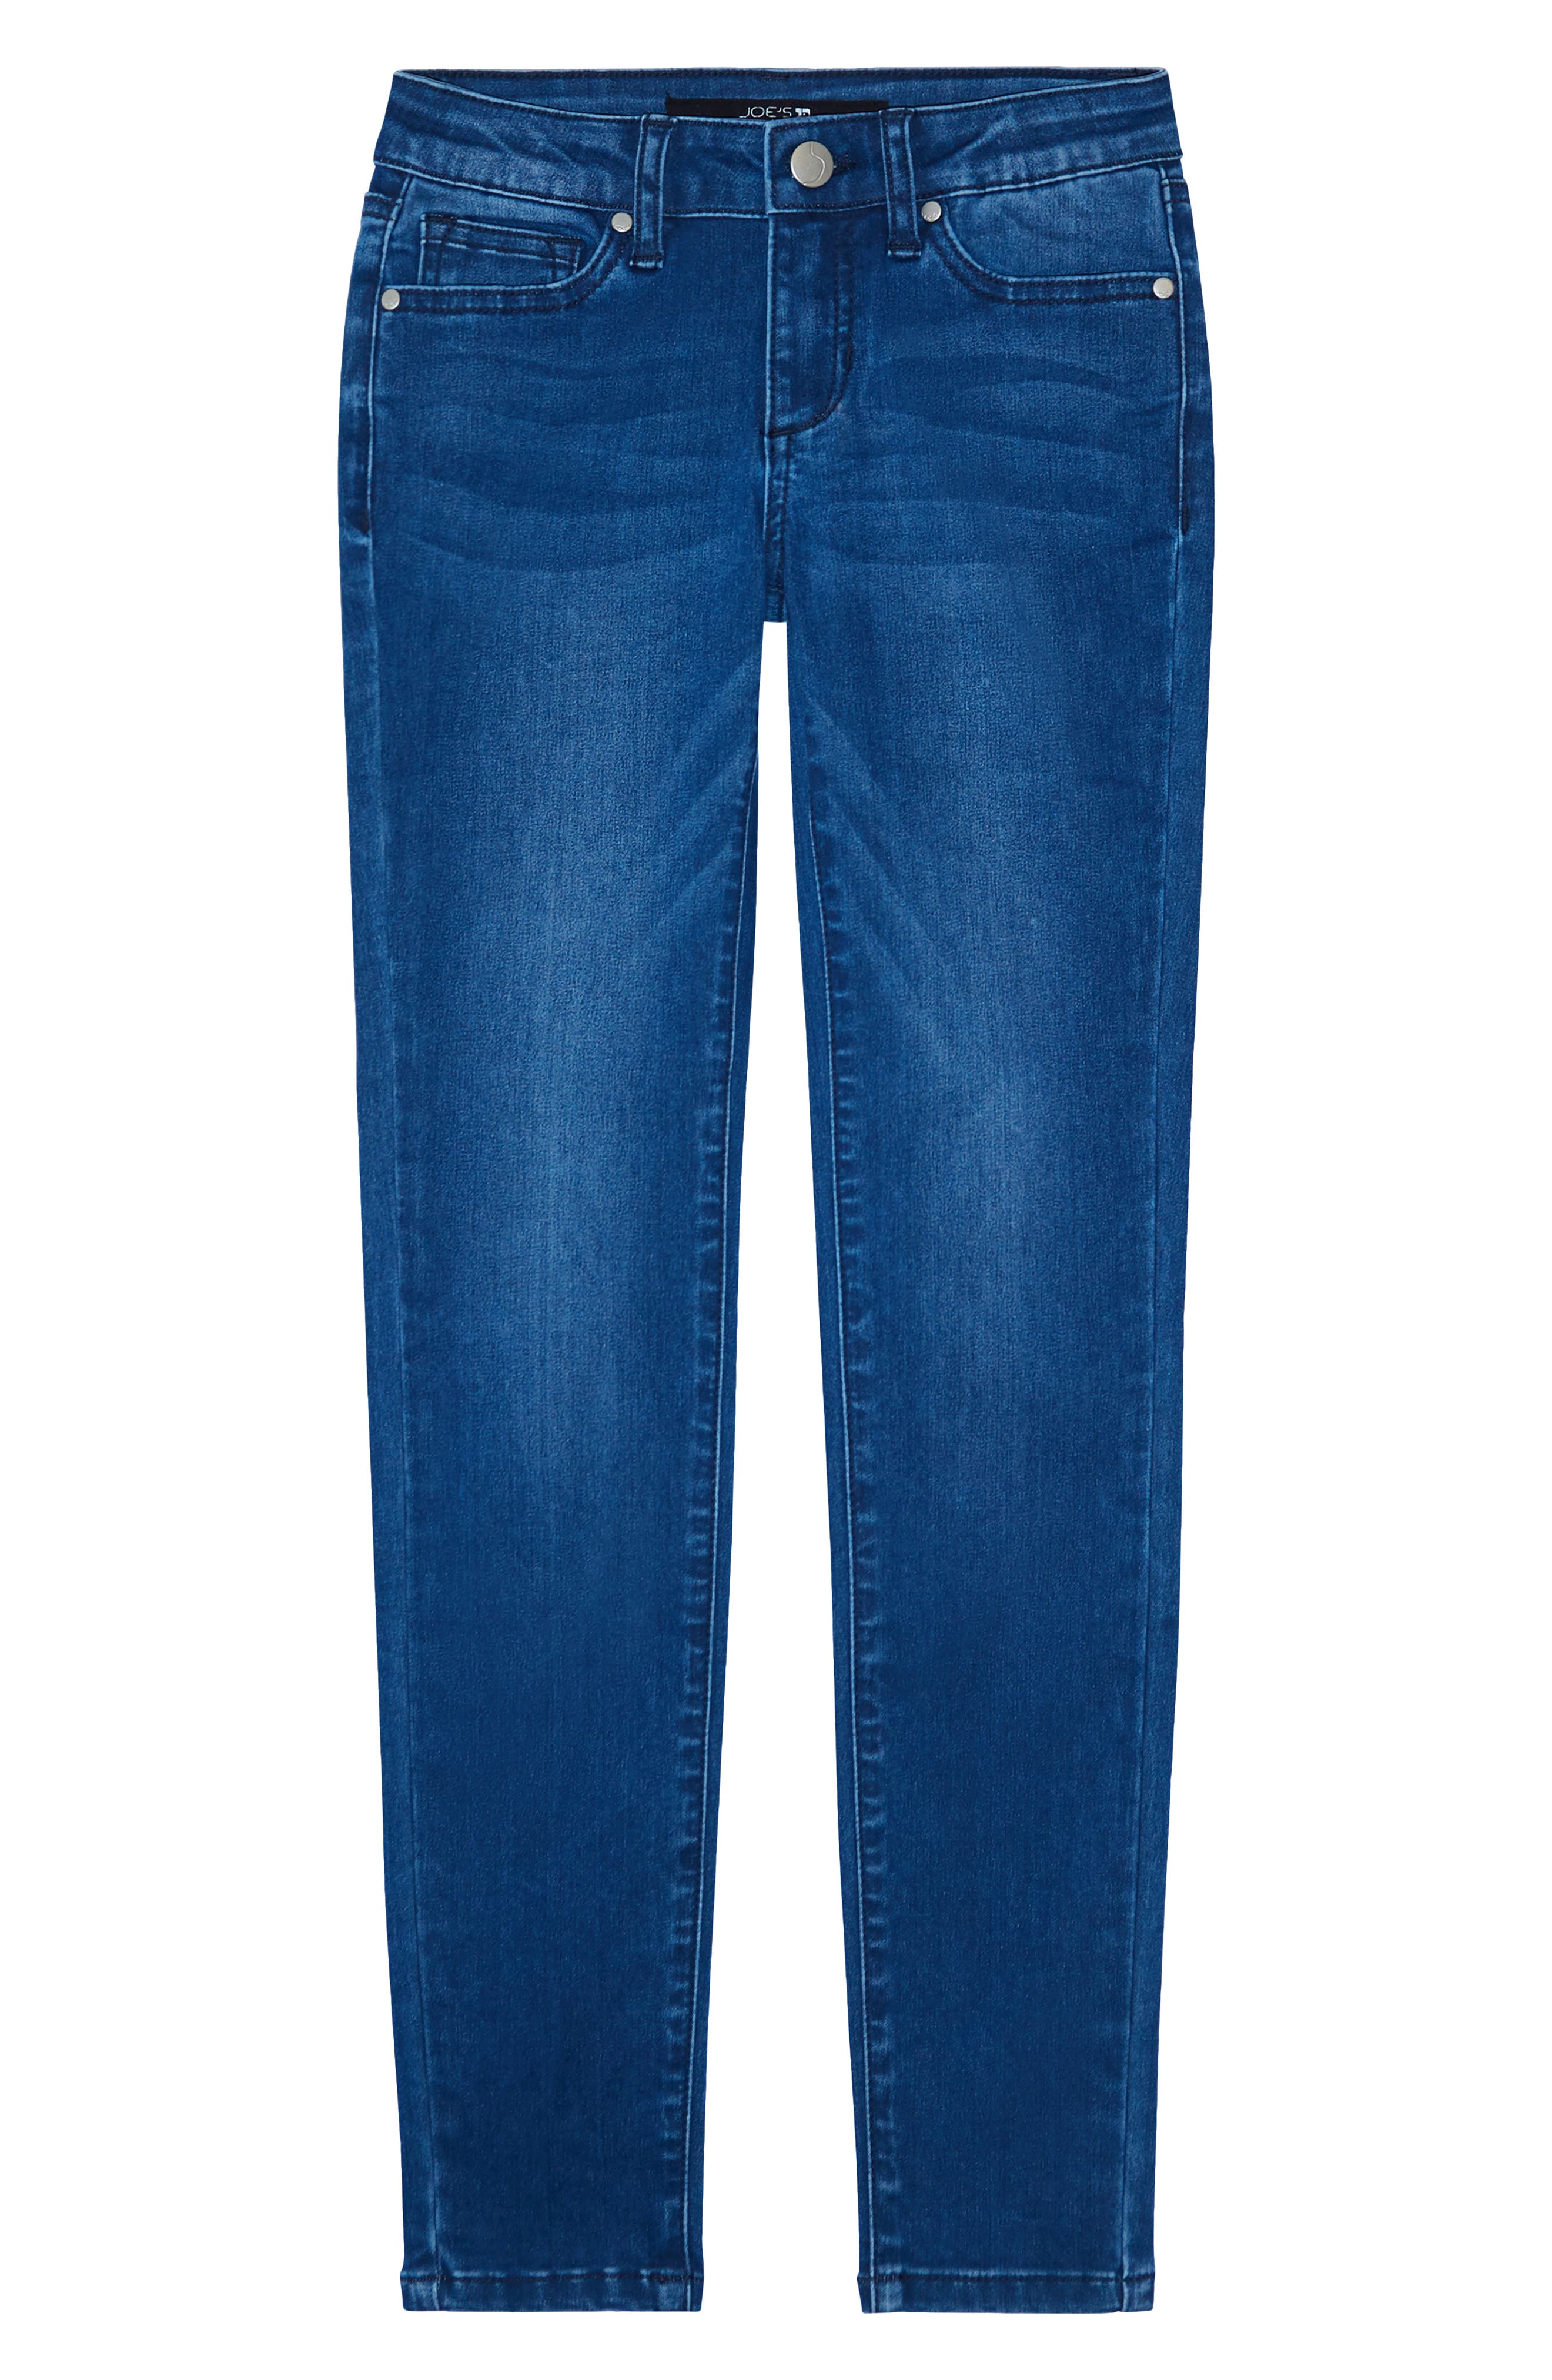 nordstrom joe's jeans women's